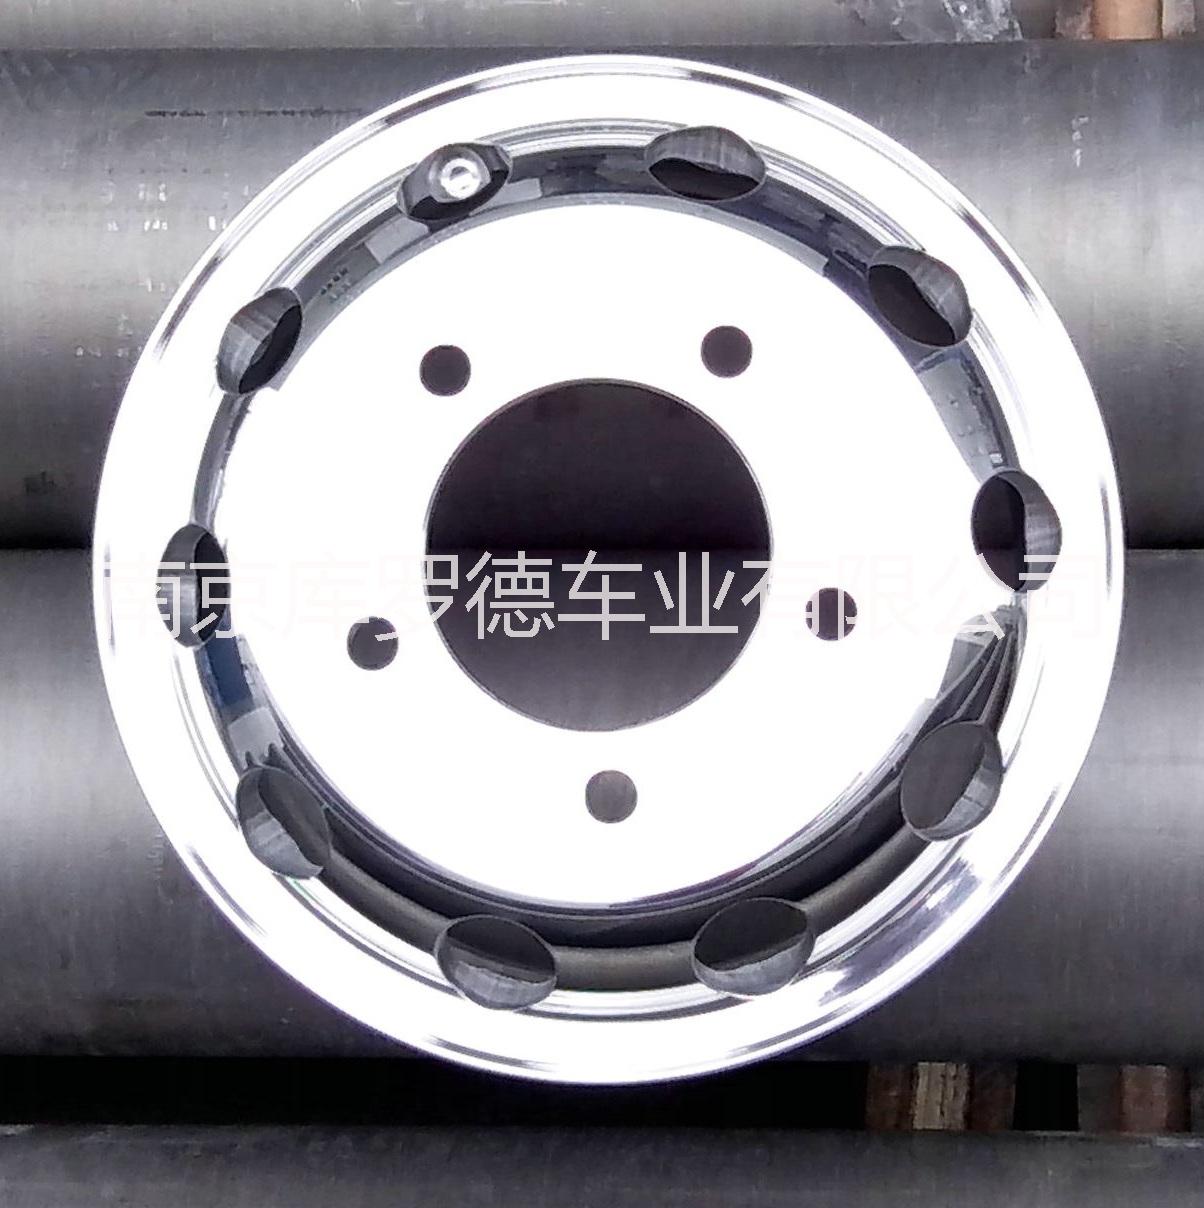 考斯特铝合金锻造轮毂 杭州考斯特铝合金锻造轮毂